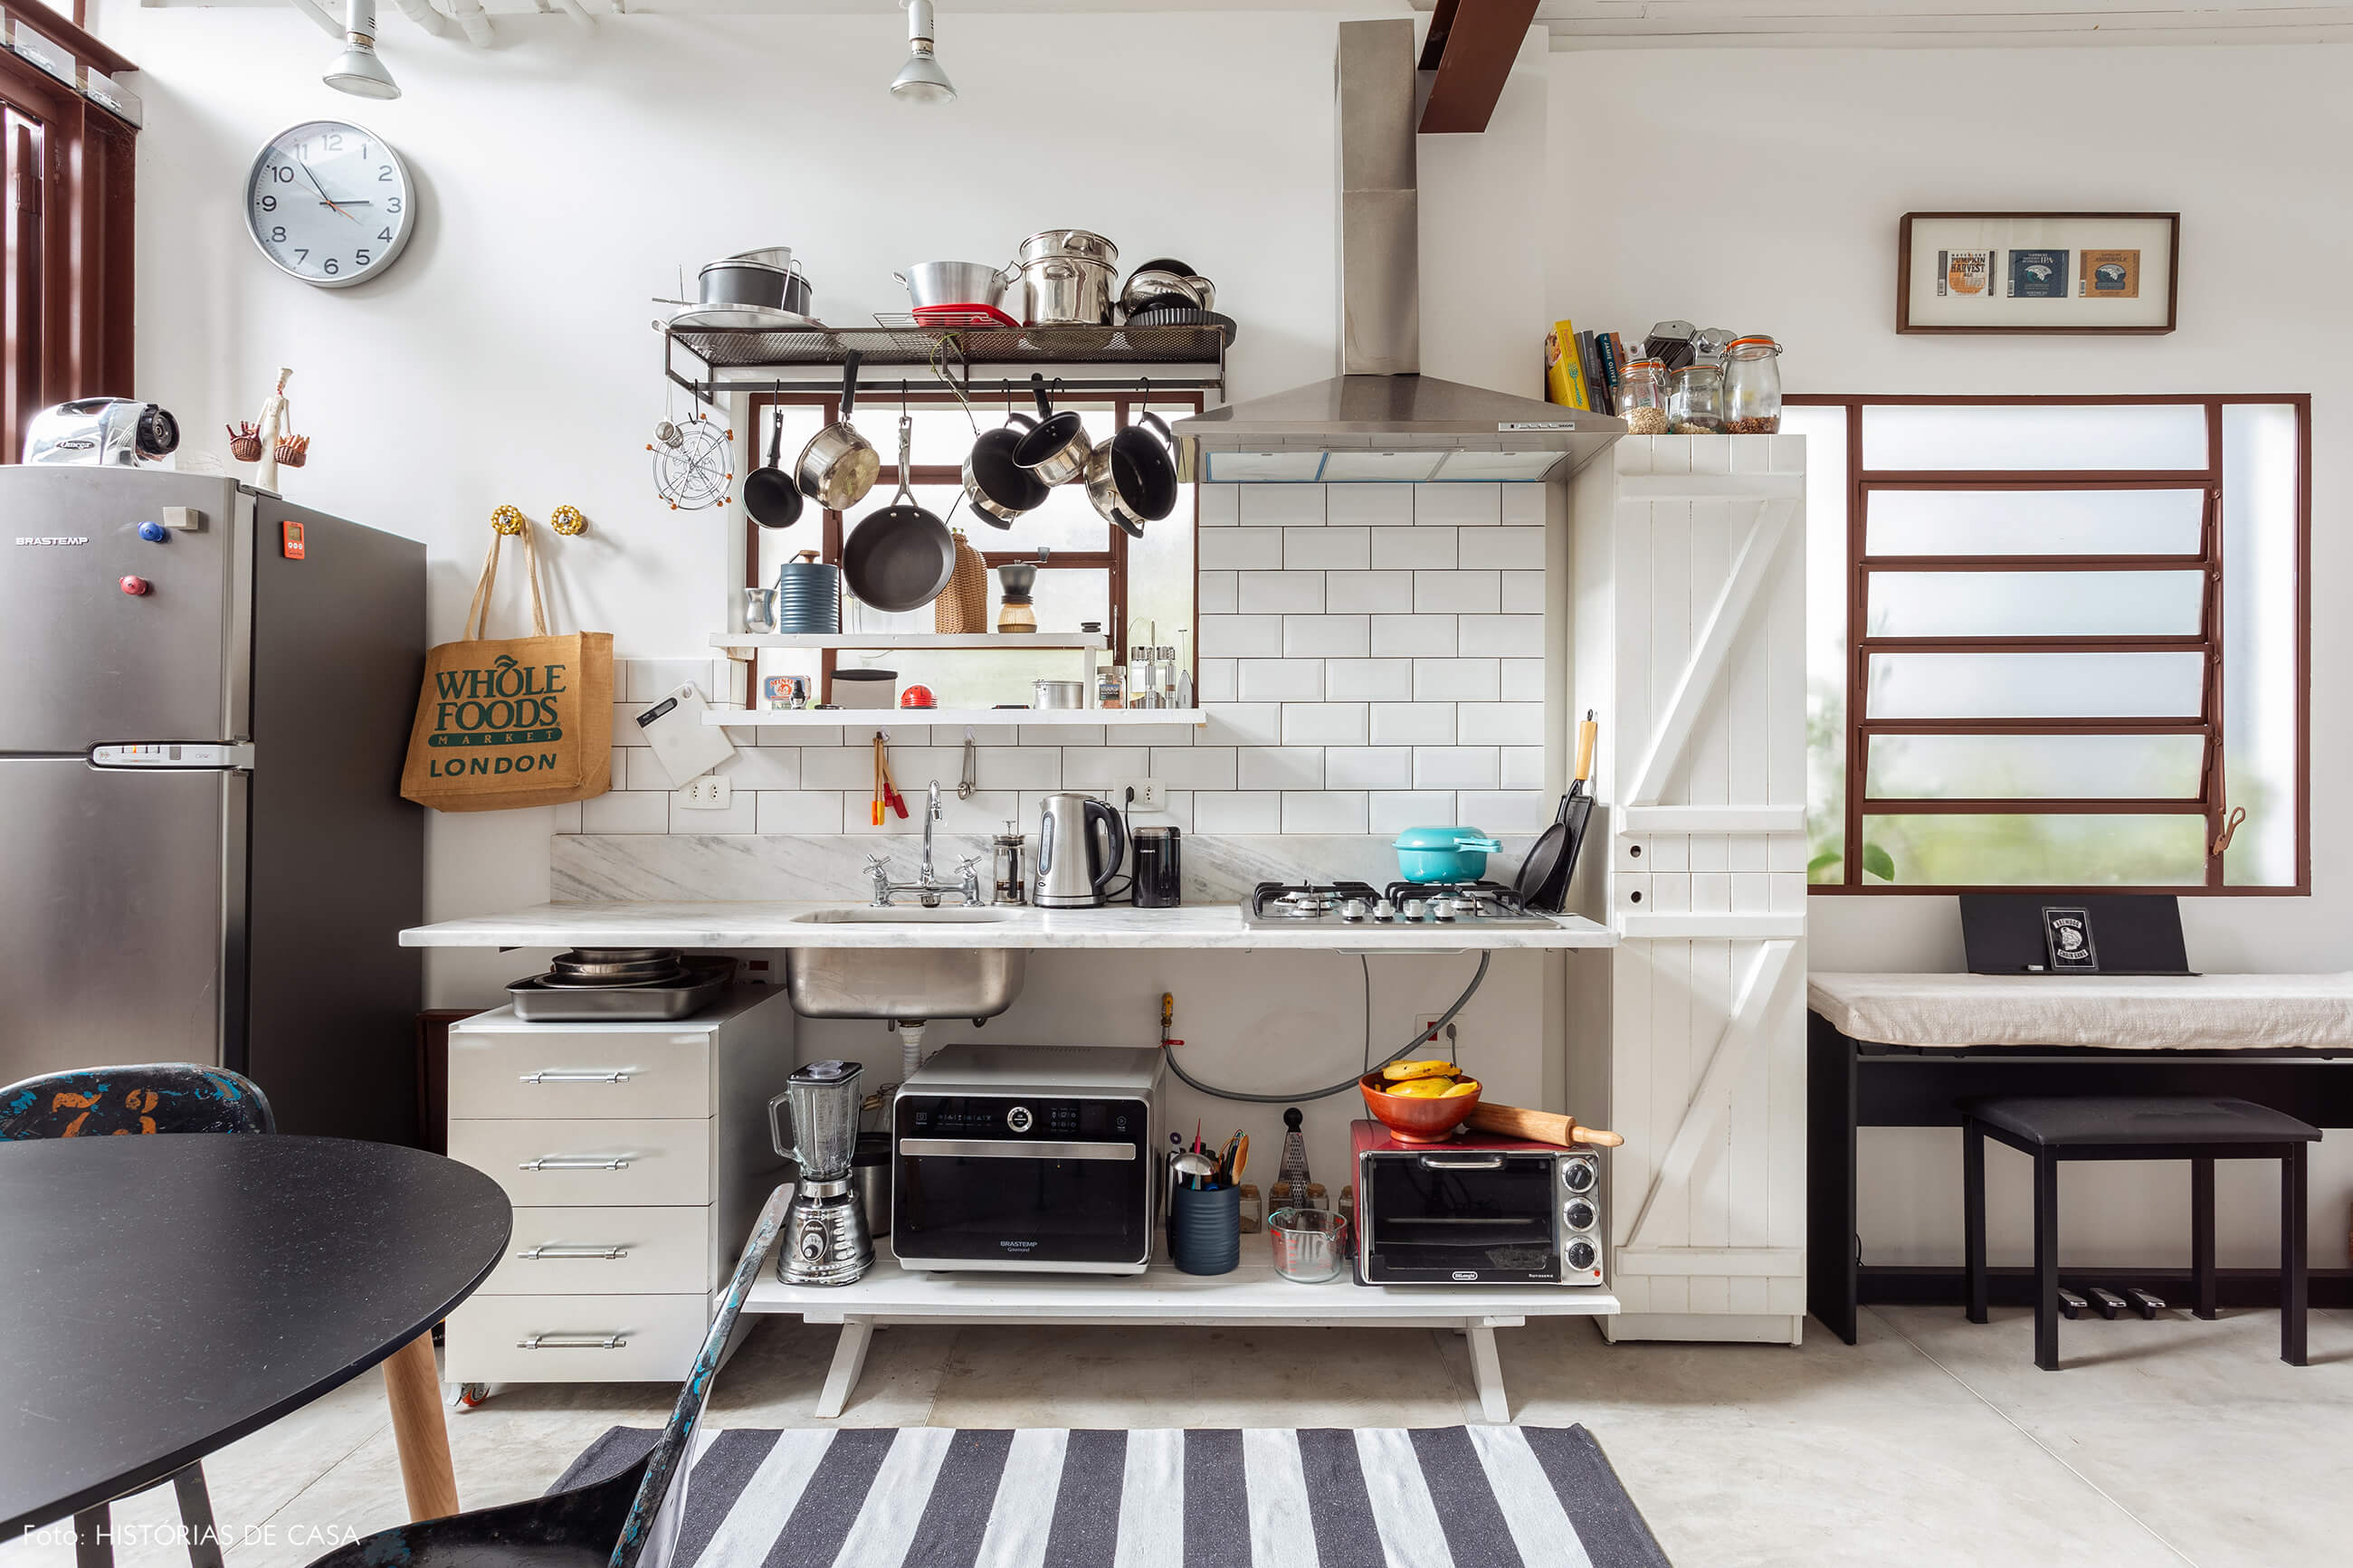 Casa com cozinha integrada e prateleiras abertas